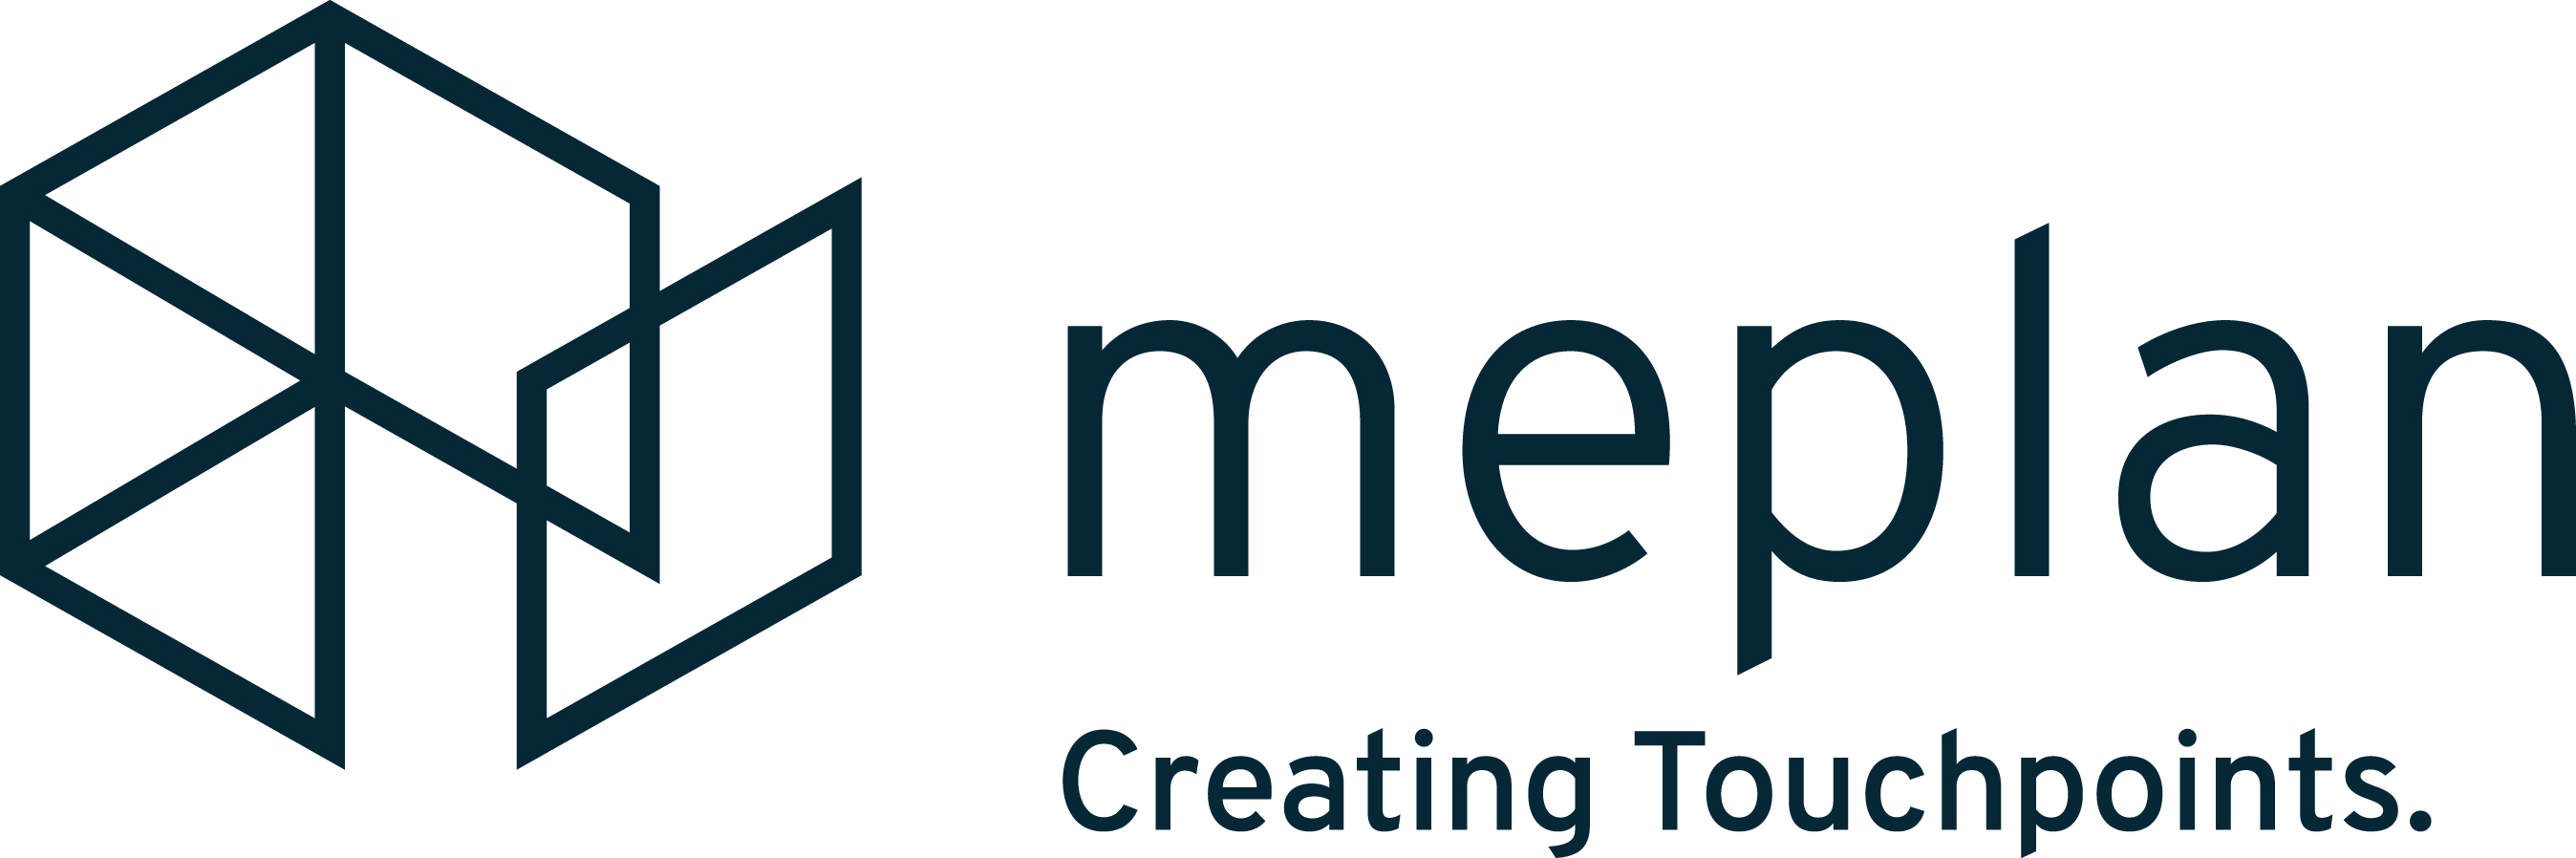 meplan GmbH